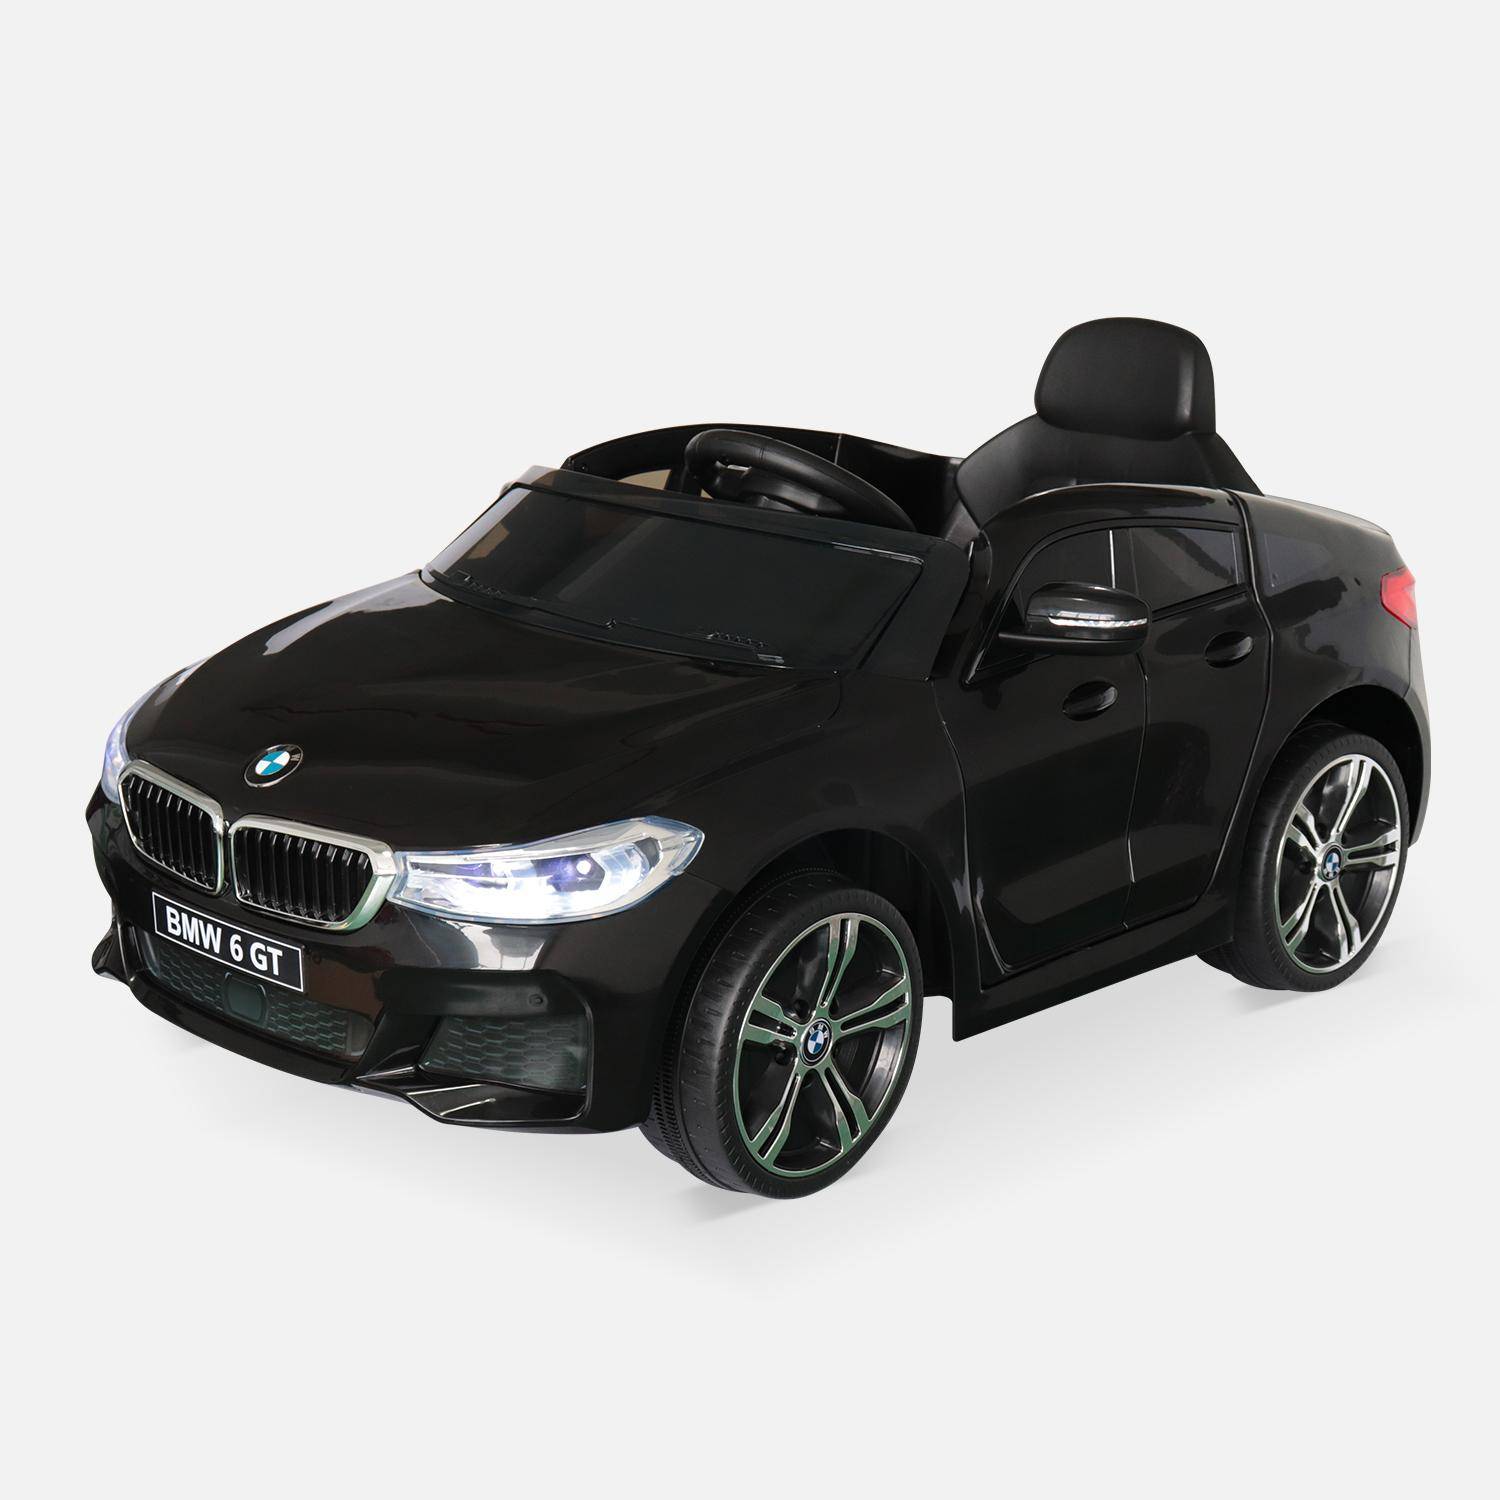 BMW Serie 6 GT Gran Turismo nera, auto elettrica per bambini 12V 4 Ah, 1 posto, con autoradio e telecomando Photo2